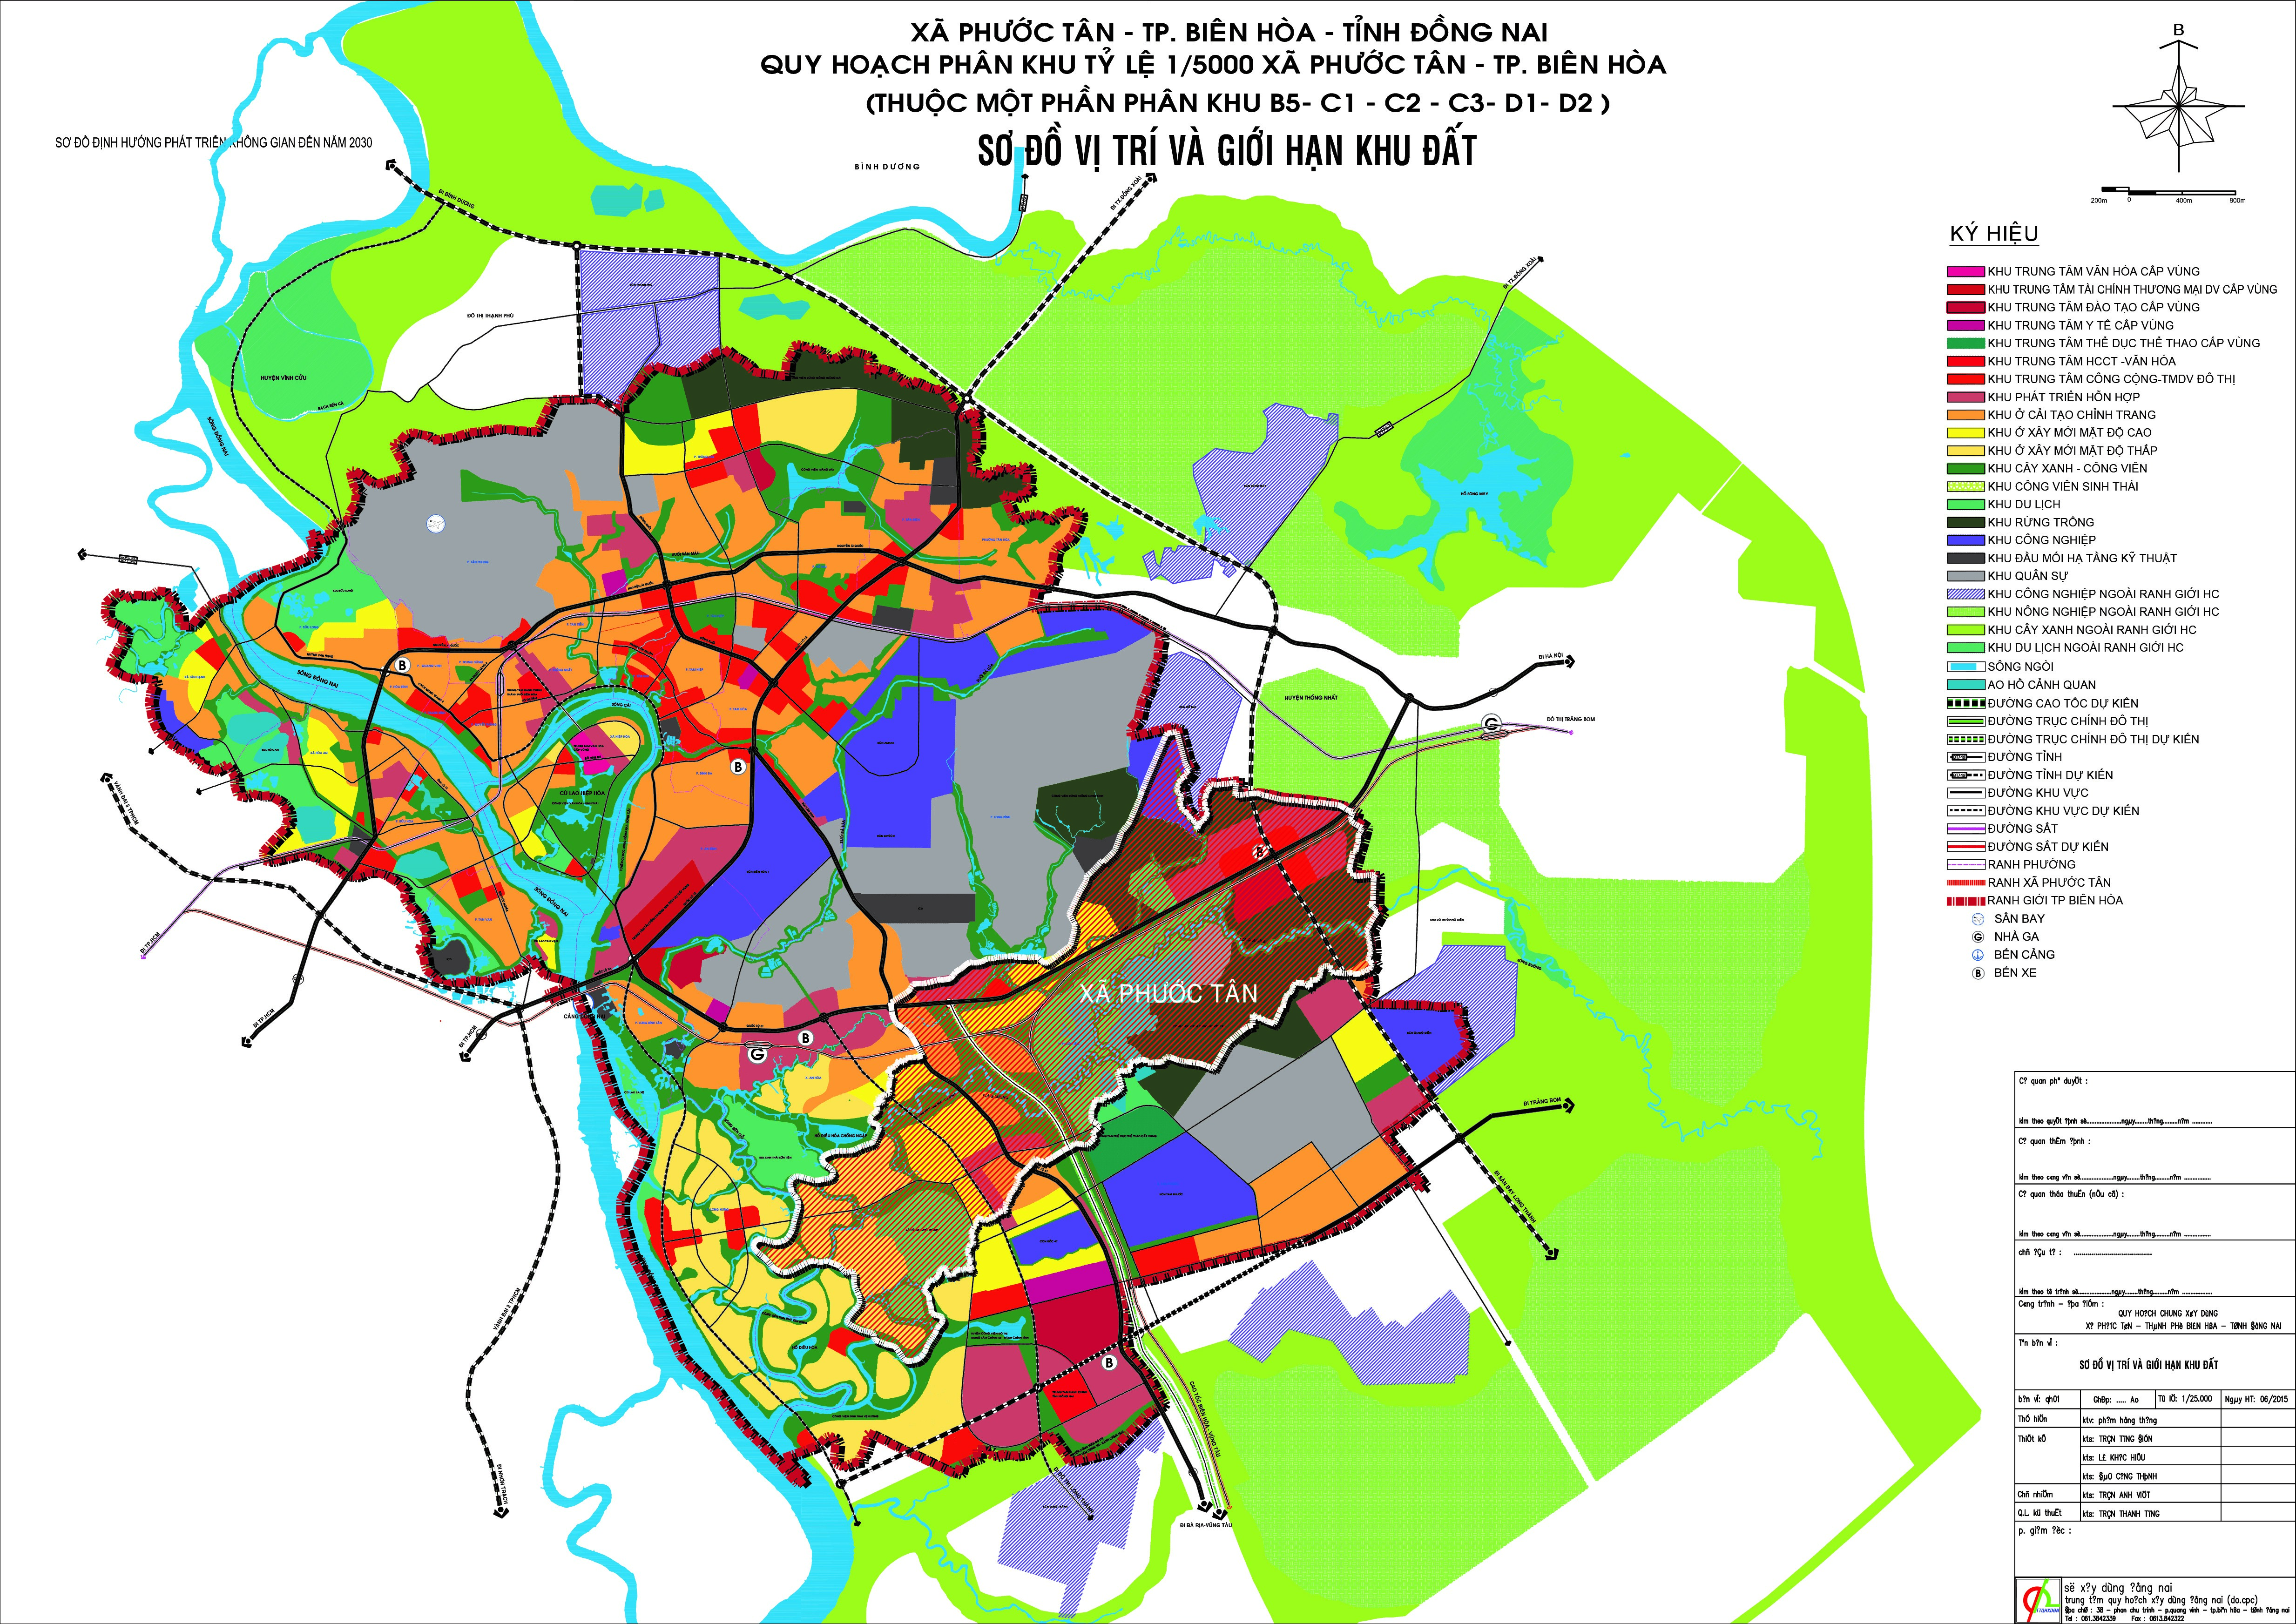 Sở Xây dựng Đồng Nai đang thực hiện quy hoạch Biên Hòa - Đồng Nai để phát triển thành phố ngày càng vững mạnh. Các kế hoạch bao gồm cải thiện hạ tầng và xây dựng các khu đô thị mới. Quy hoạch sẽ mang lại nhiều cơ hội kinh doanh cho các doanh nghiệp và cơ hội việc làm mới cho người dân. Xem những hình ảnh quy hoạch thành phố Biên Hòa để hiểu rõ hơn về sự phát triển của địa phương.